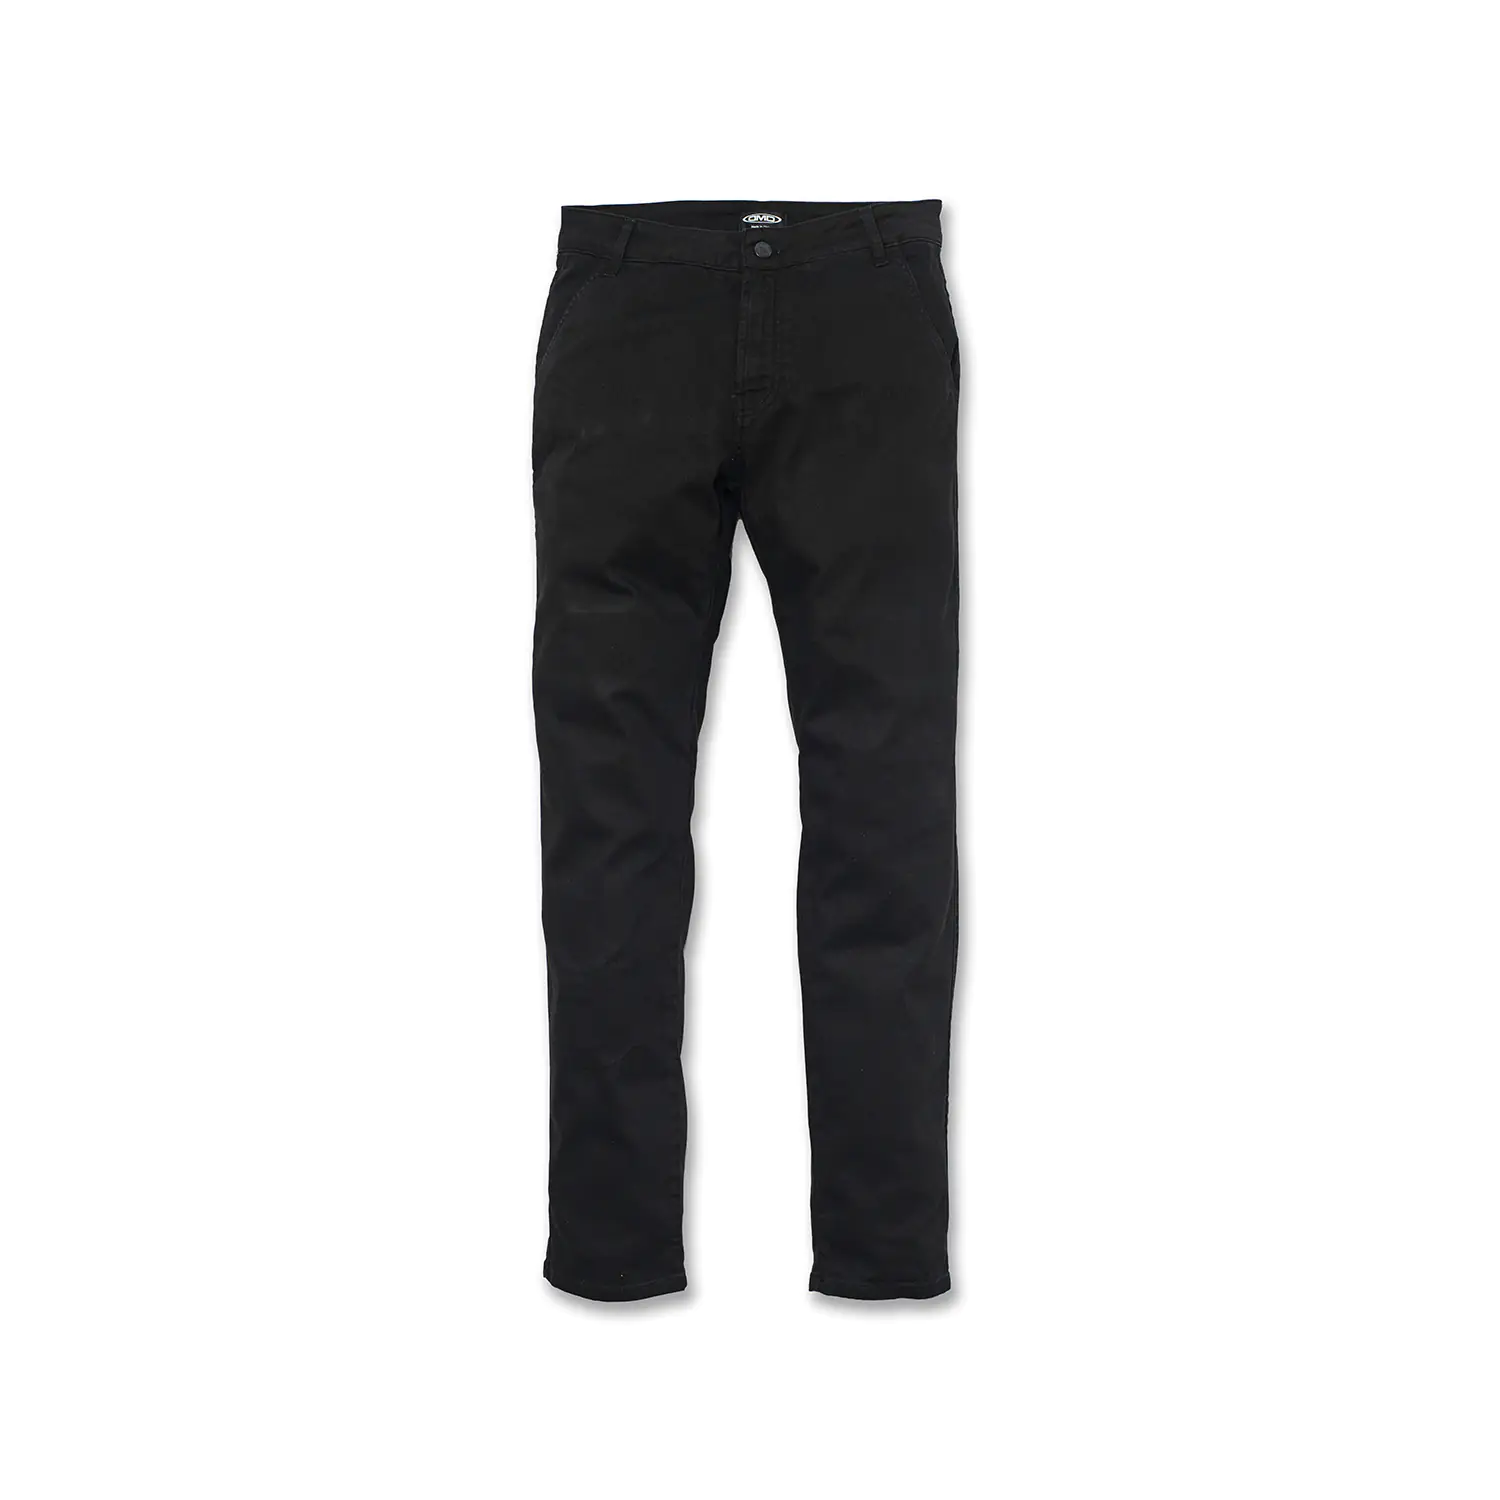 dmd.eu - CHINO BLACK DMD – Pants Chino Black – front